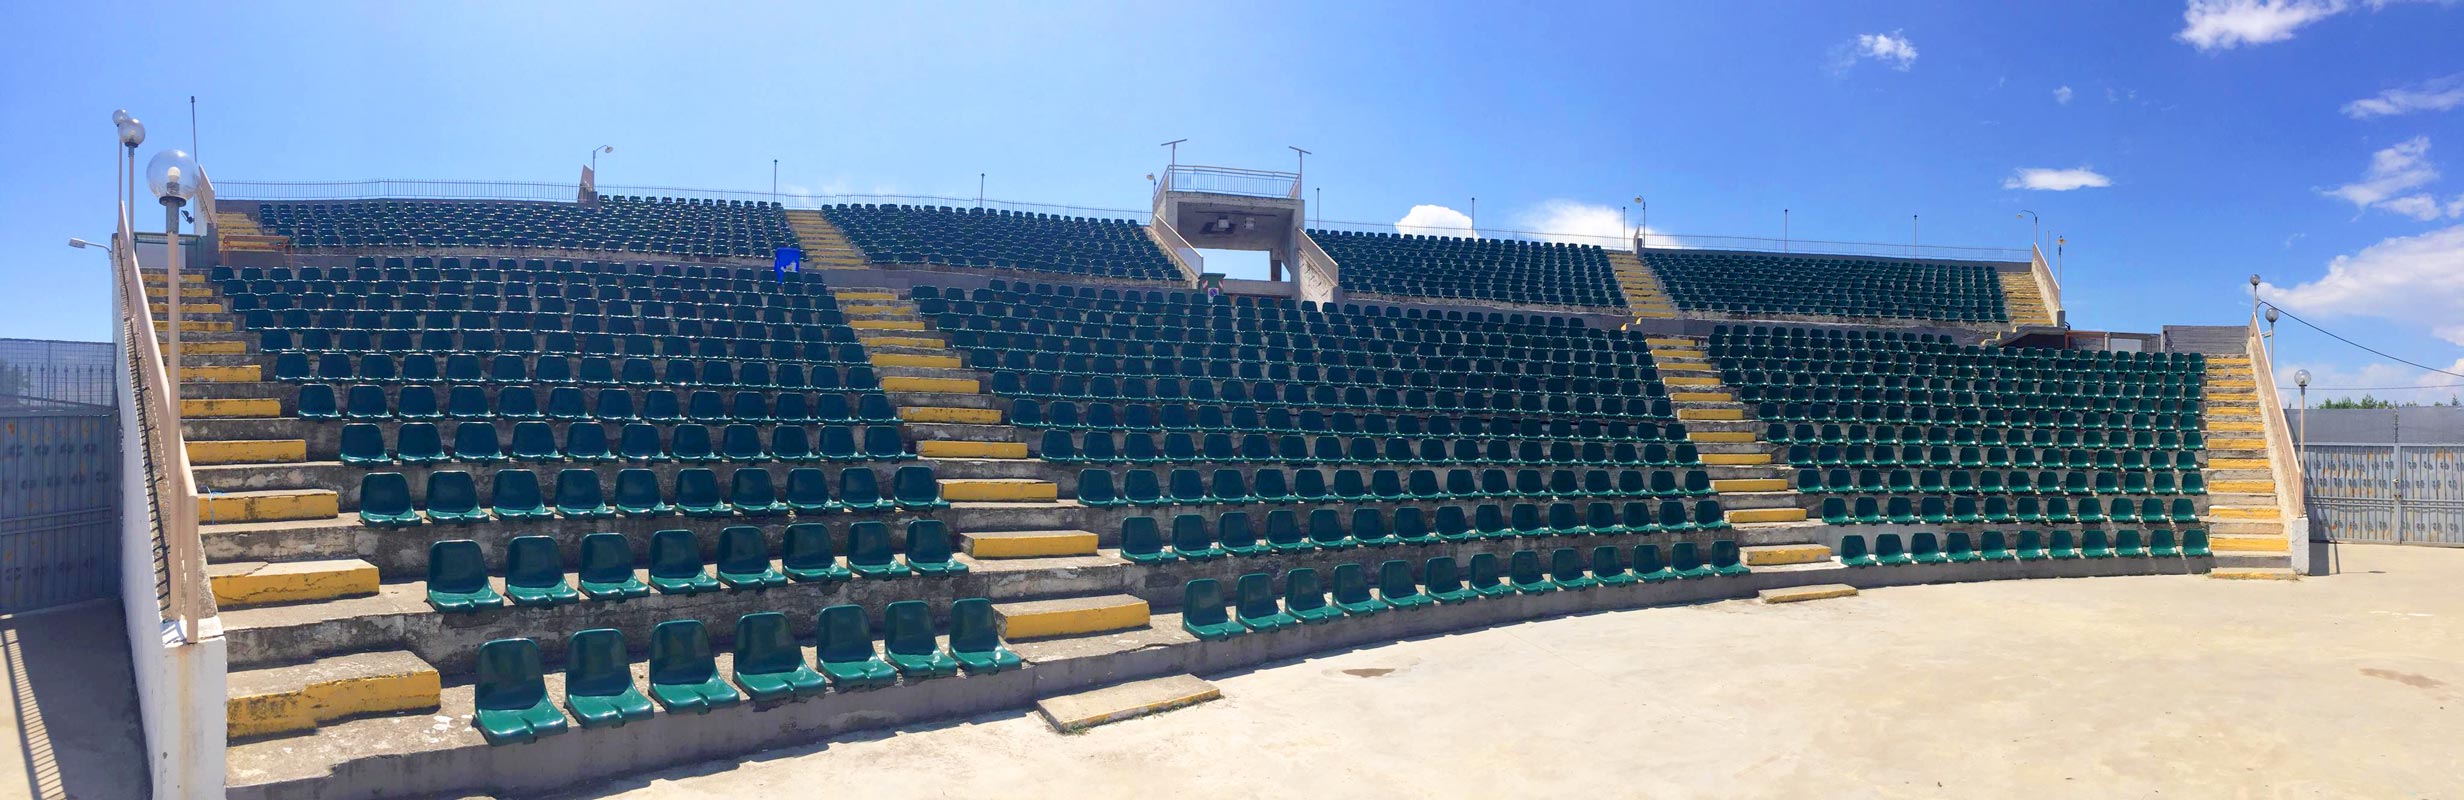 Προμήθεια και τοποθέτηση καθισμάτων σταδίου στο υπαίθριο αμφιθέατρο του Δήμου Αλεξάνδρειας